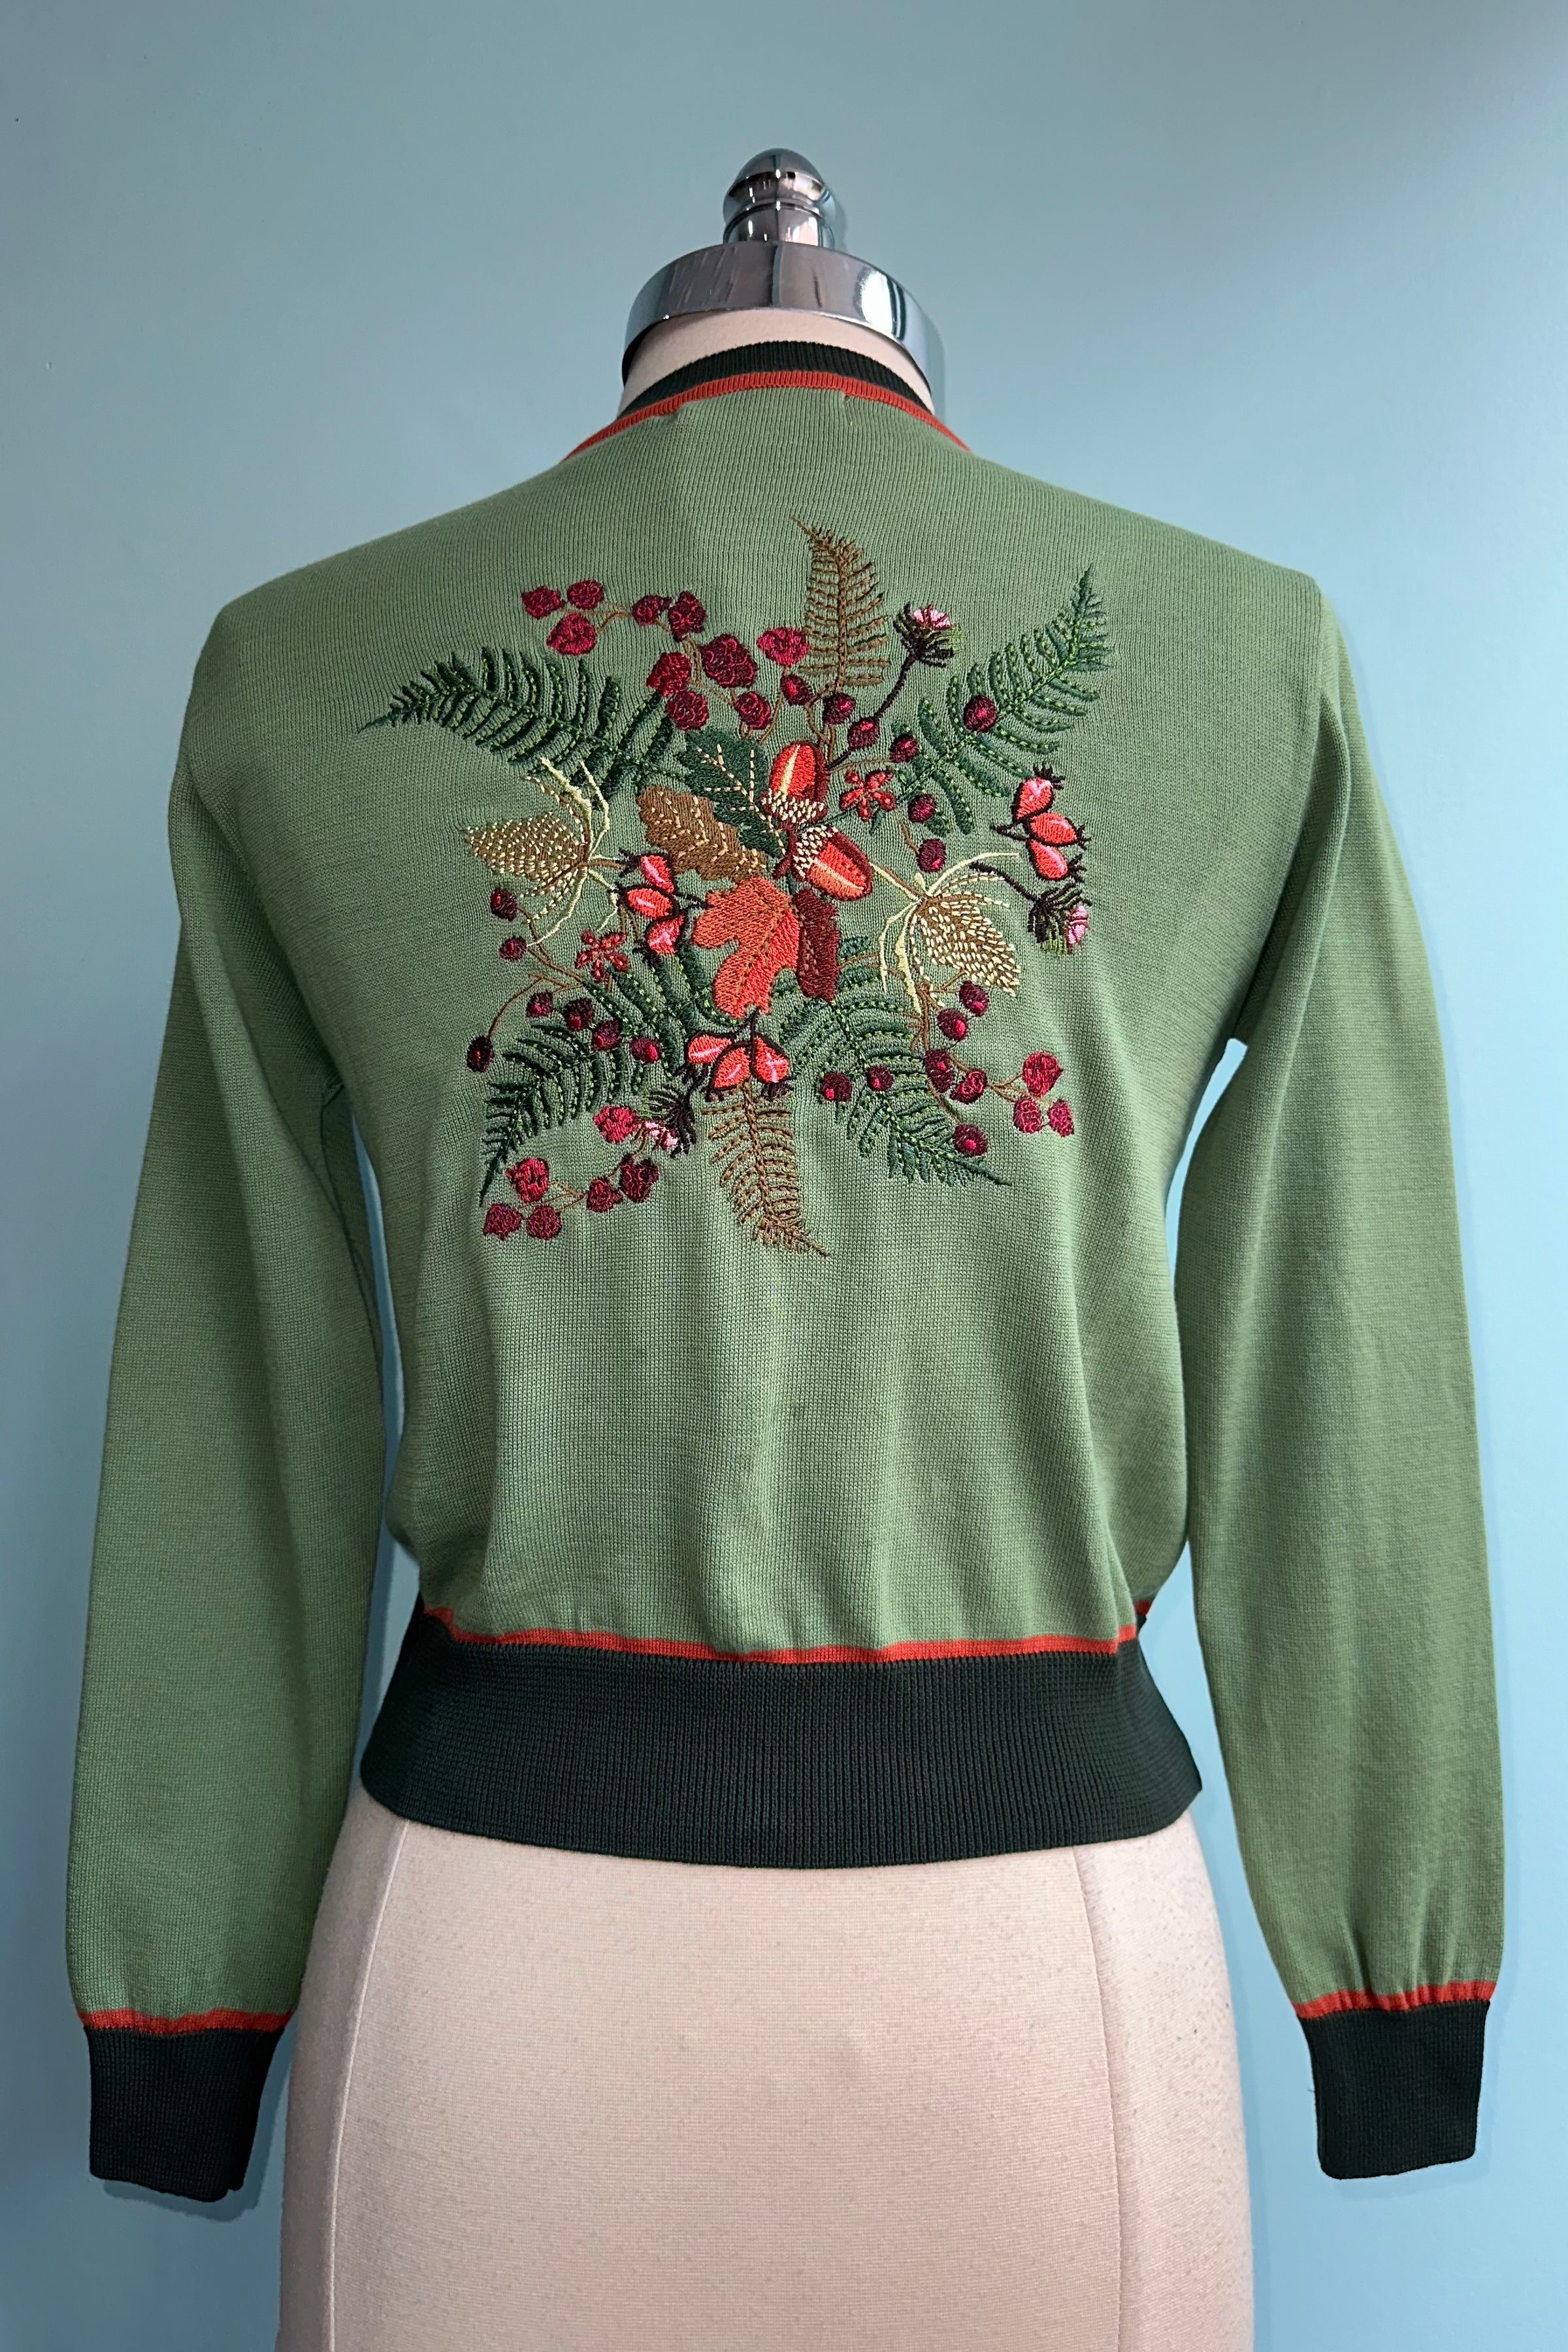 Vera - Teal Bugs Embroidered Cardigan - 3/4 Sleeve